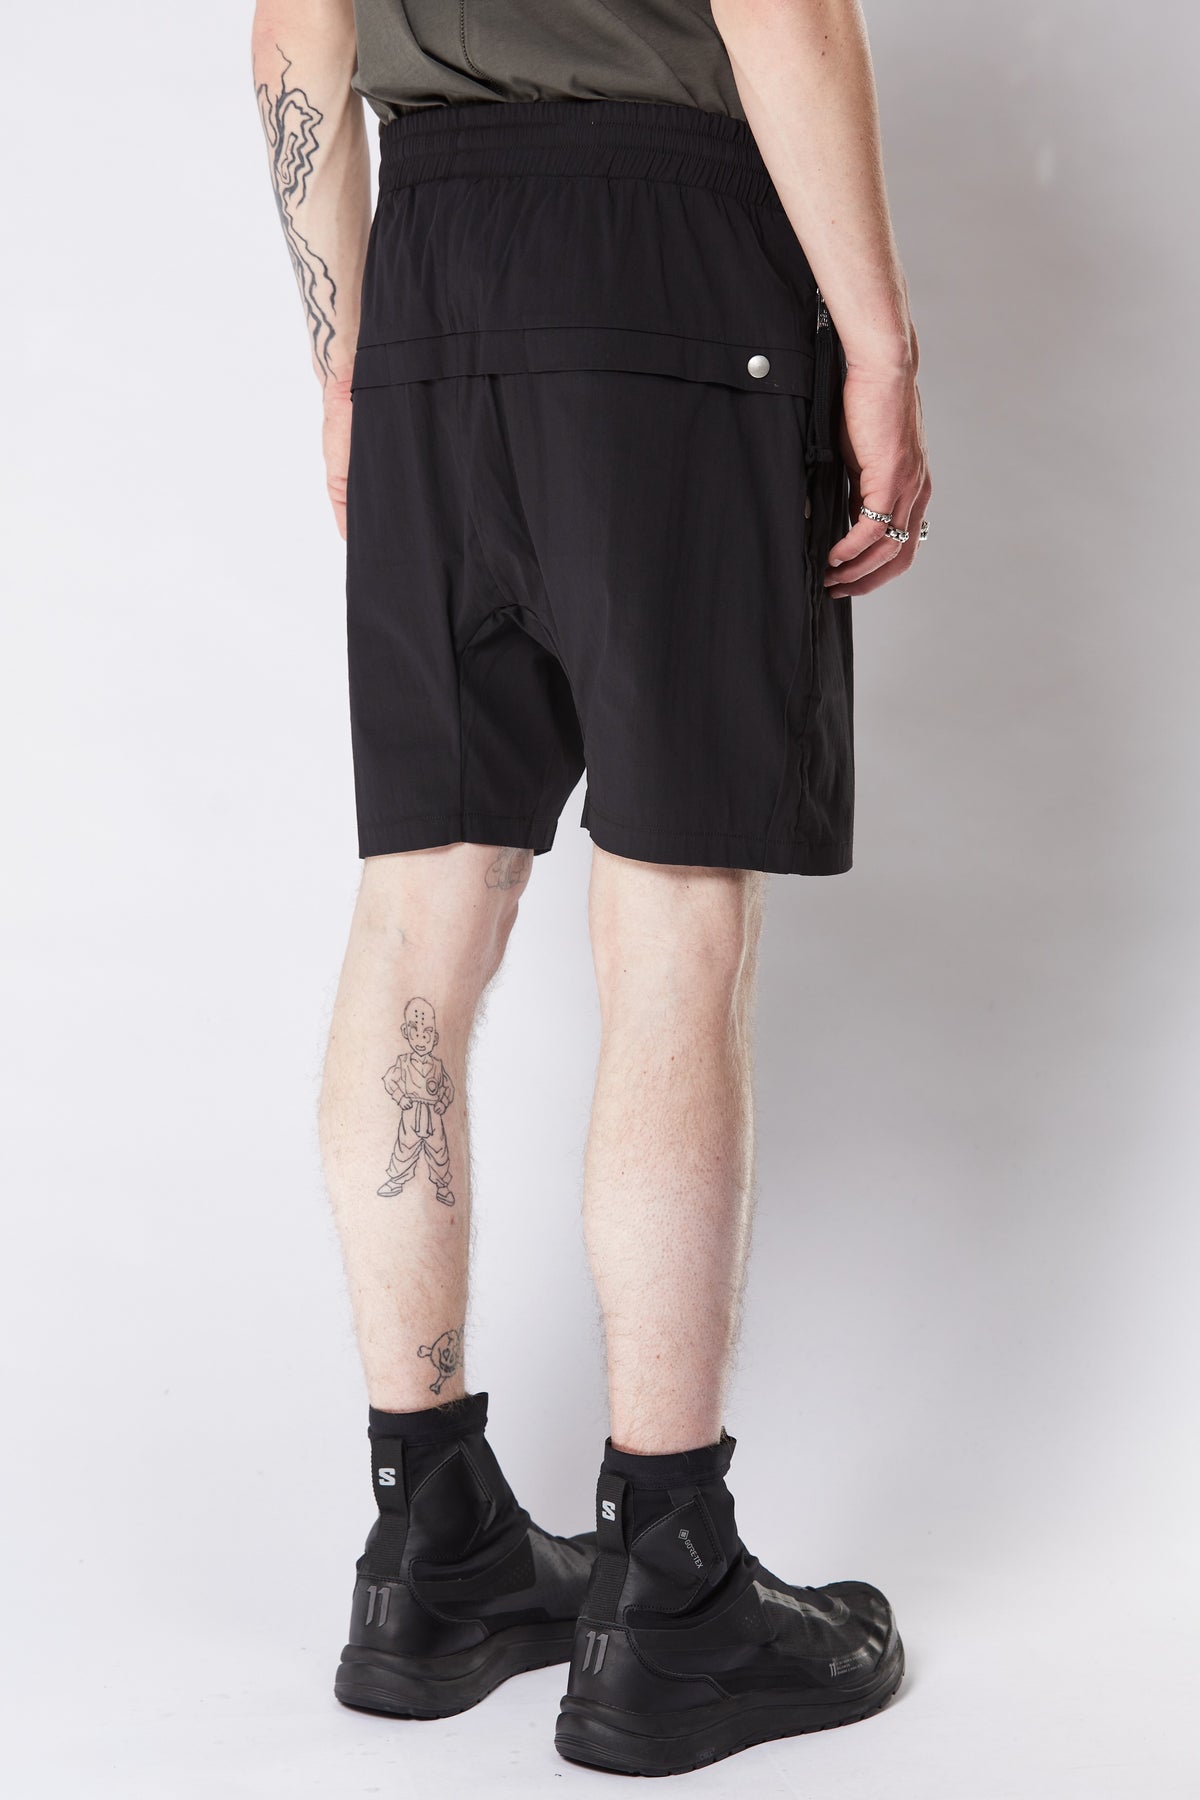 thom/krom M ST 422 Drop Crotch Shorts - Black